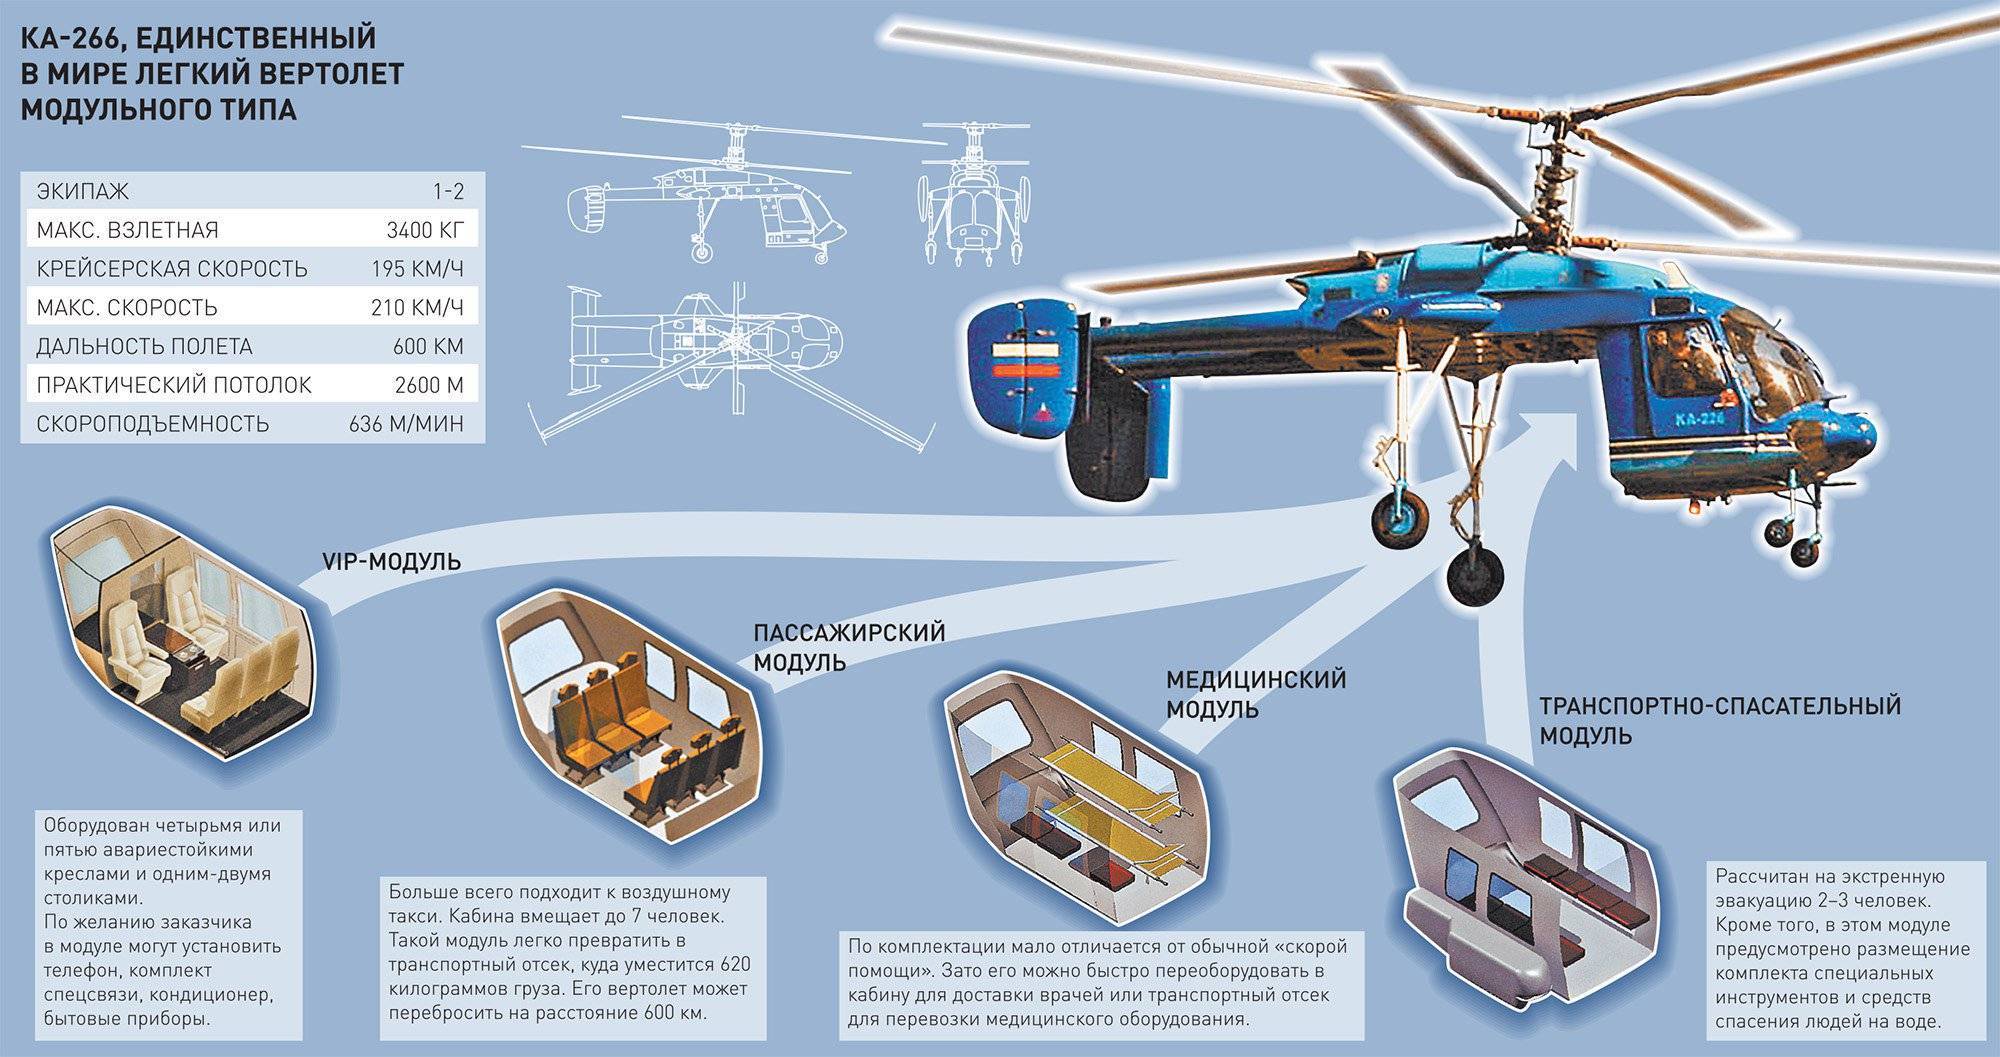 Вертолет ми-4 фото. видео. характеристики. скорость